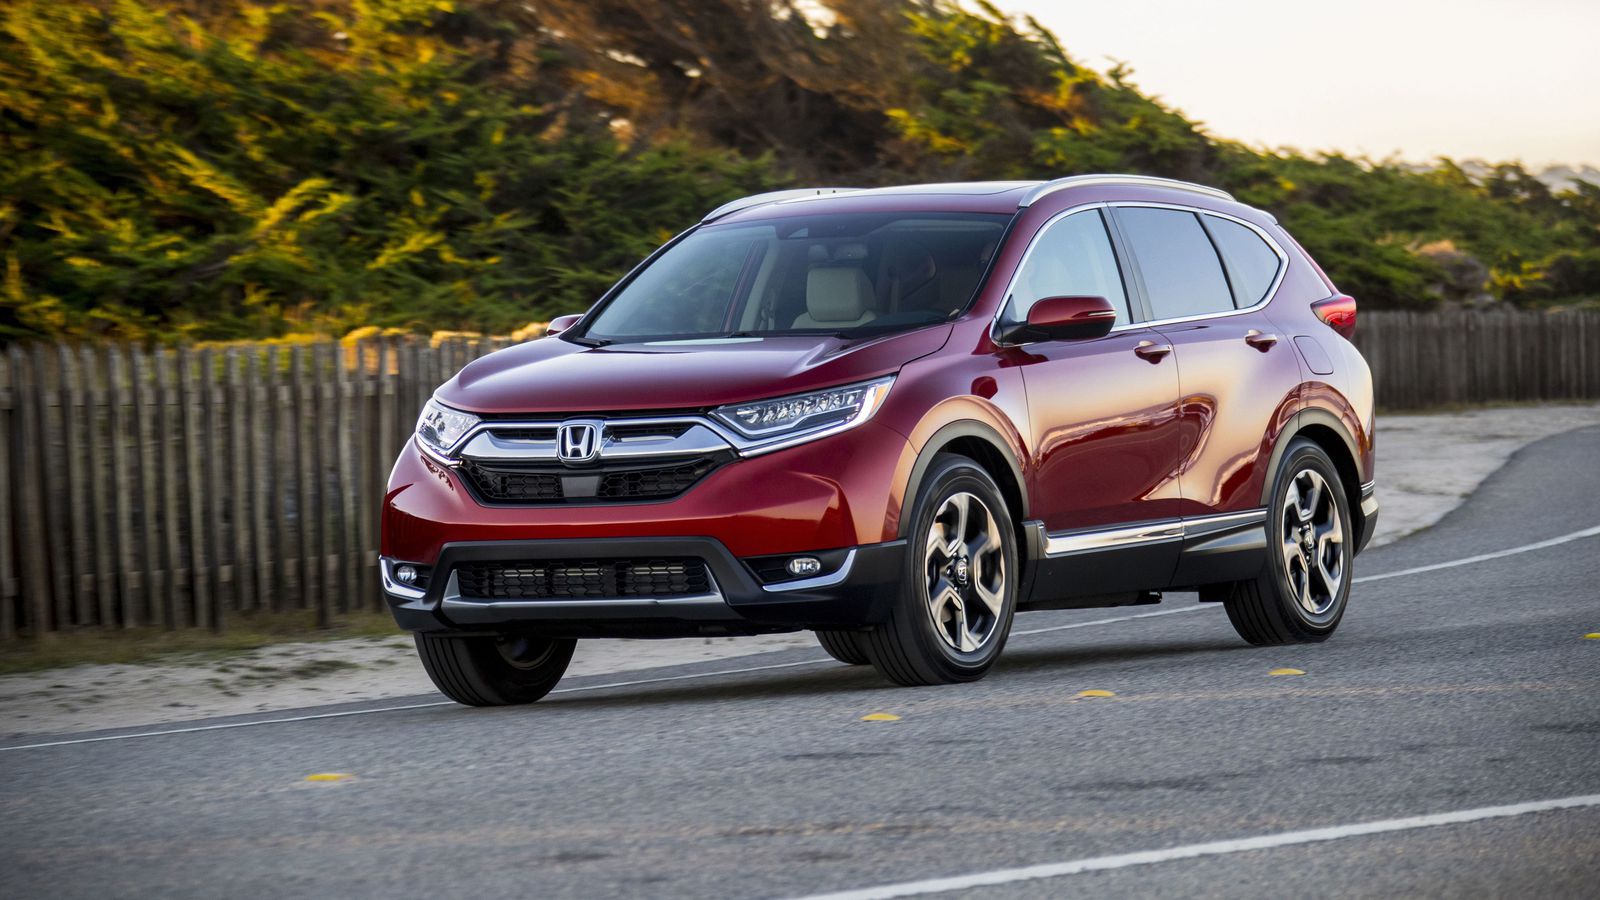 Giá Honda CRV 7 chỗ Civic đột ngột giảm gần 200 triệu đồng